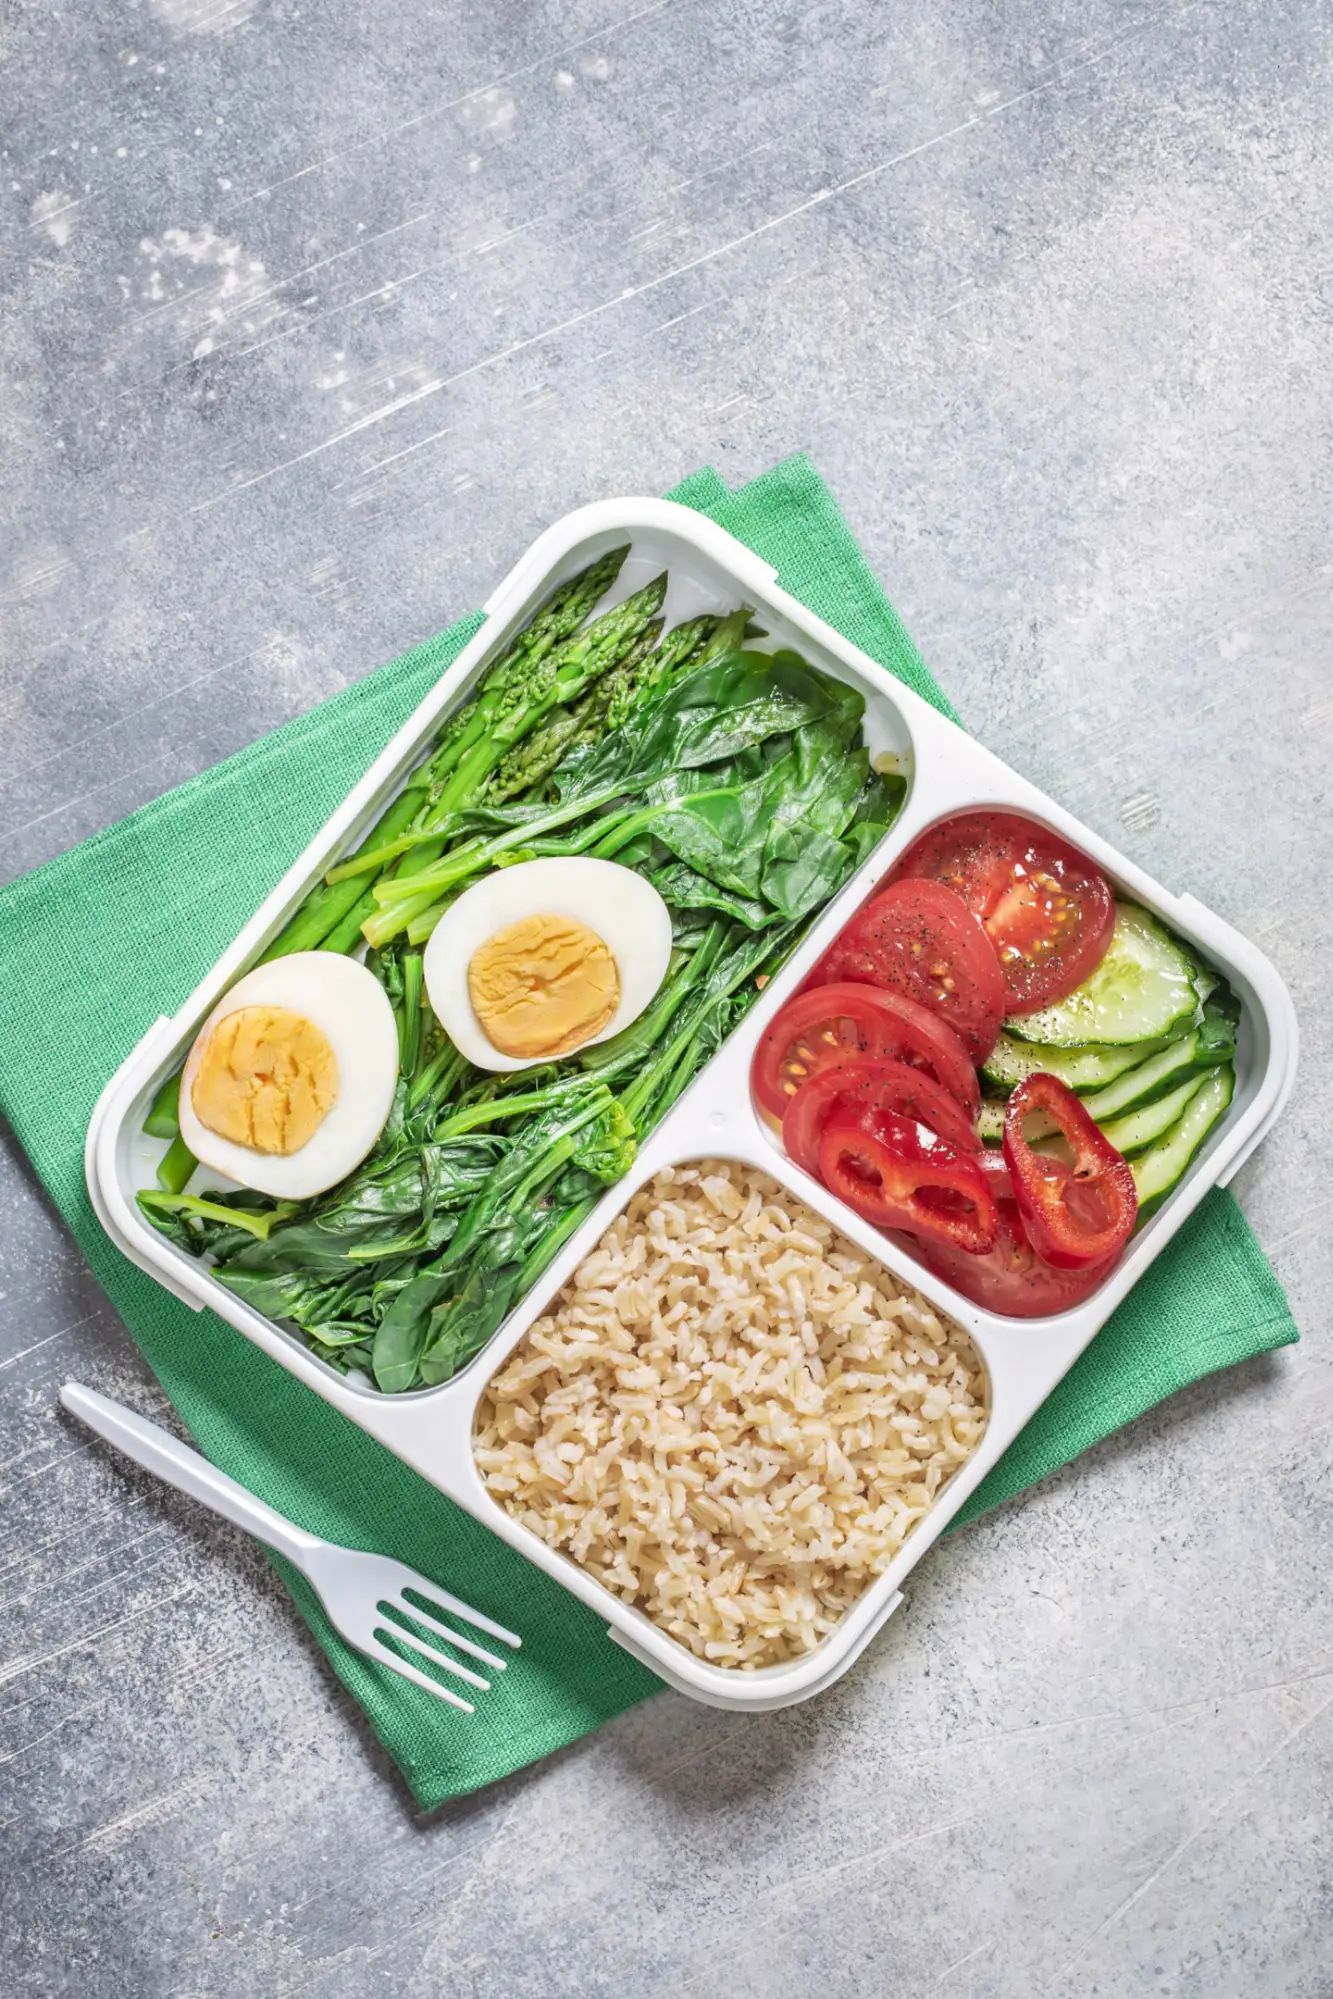 Lunch box składający się z kaszy kuskus oraz warzyw jako inspiracja na szybki posiłek do pracy.